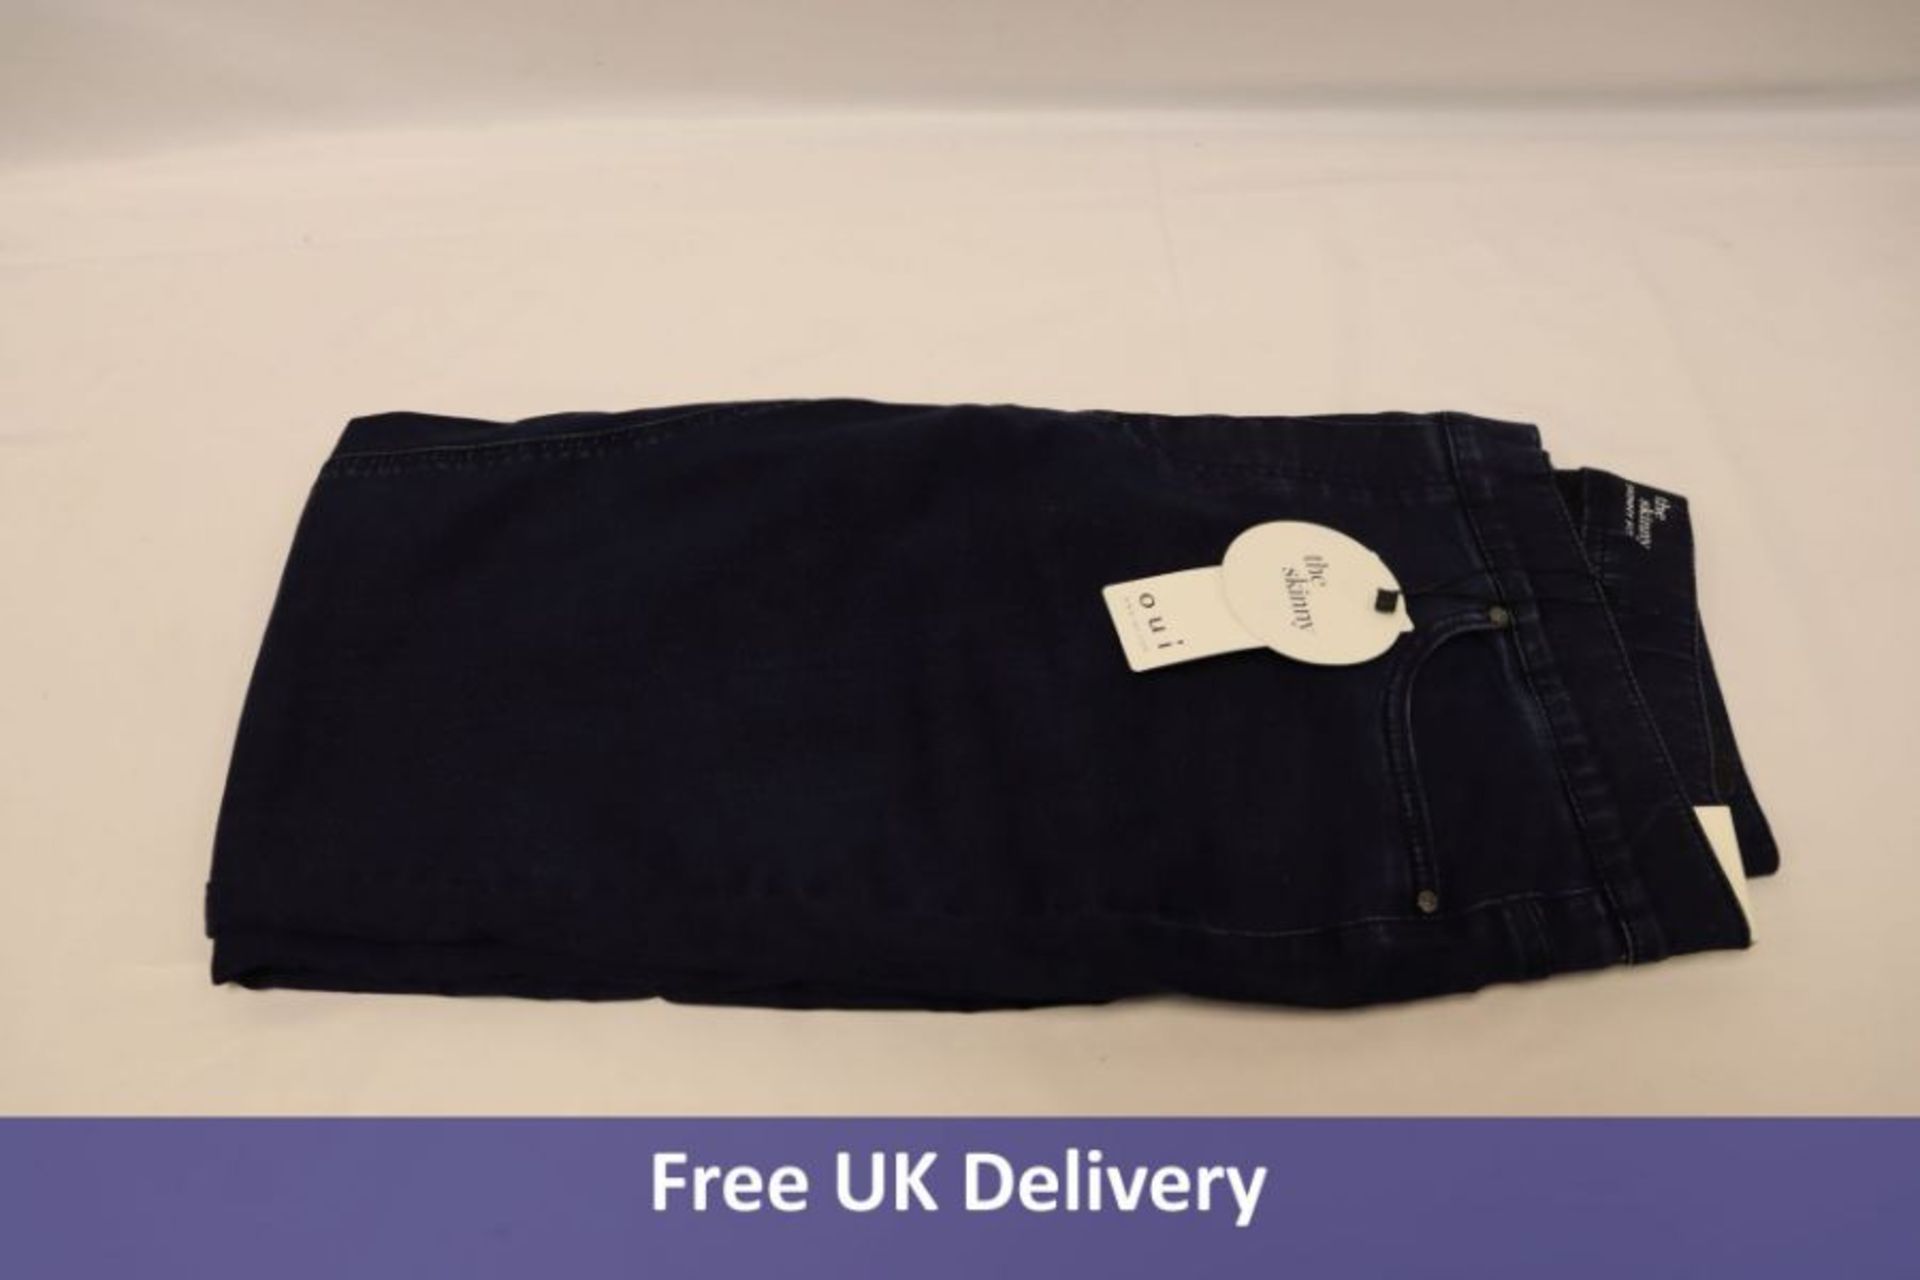 Four Oui Women's Skinny Jeans, 71898, Dark Blue to include 1x Size 10, 2x Size 12, 1x Size 14